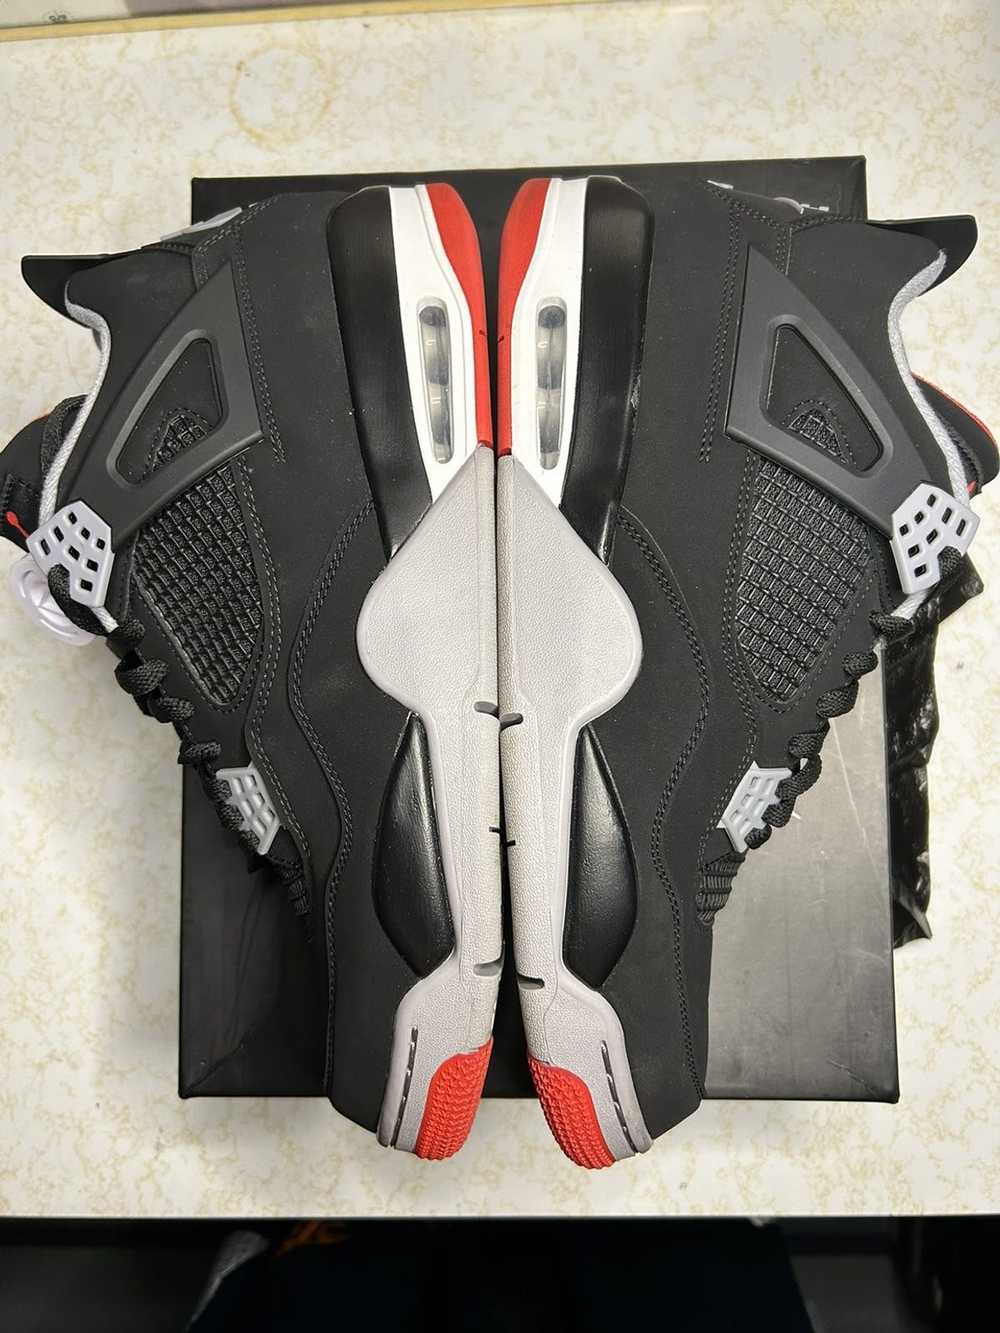 Jordan Brand Jordan Retro 4 ‘bred’ - image 3